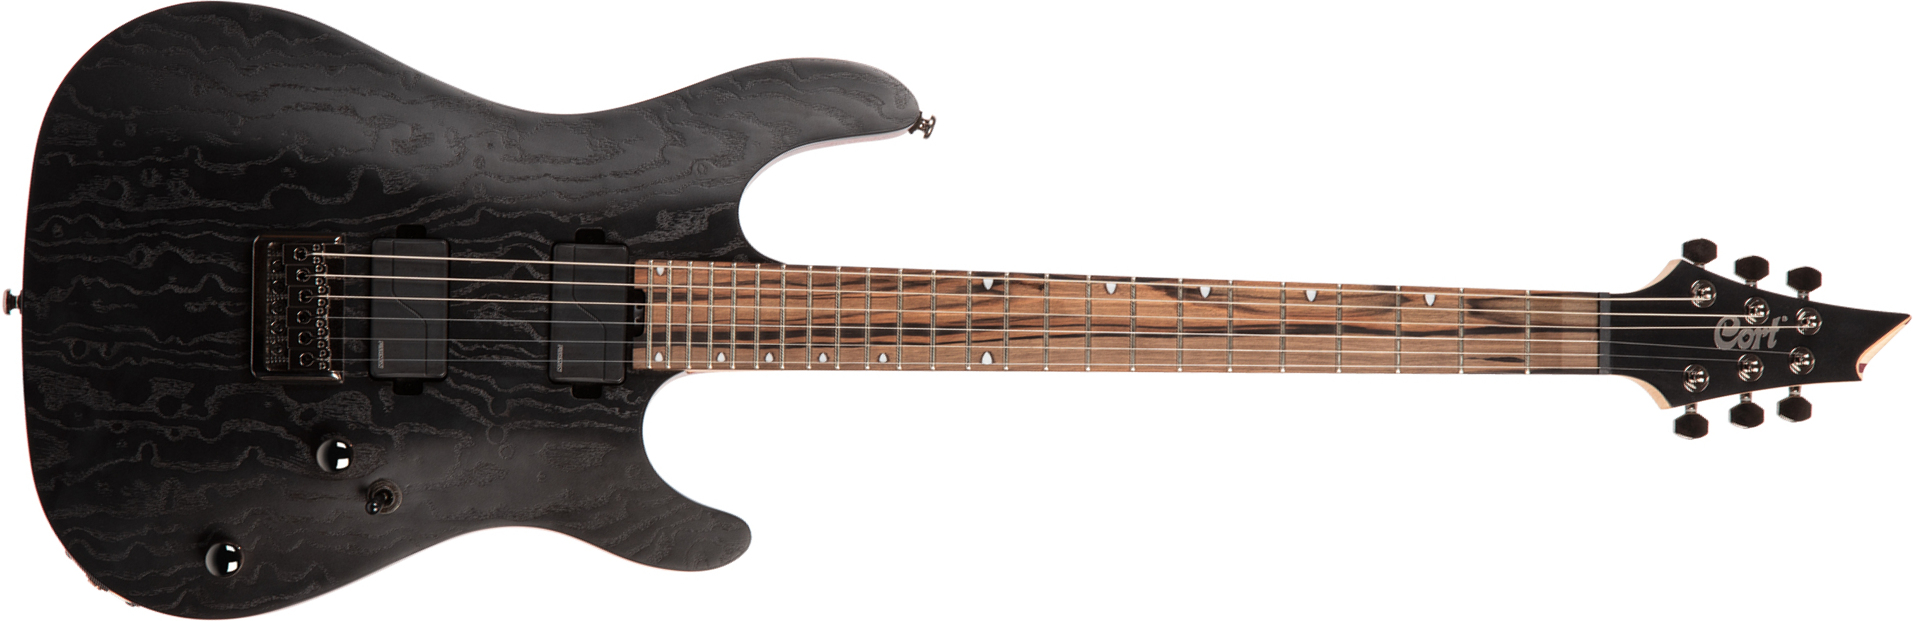 Cort Kx500 Hh Fishman Fluence Ht Eb - Etched Black - Guitarra eléctrica con forma de str. - Main picture